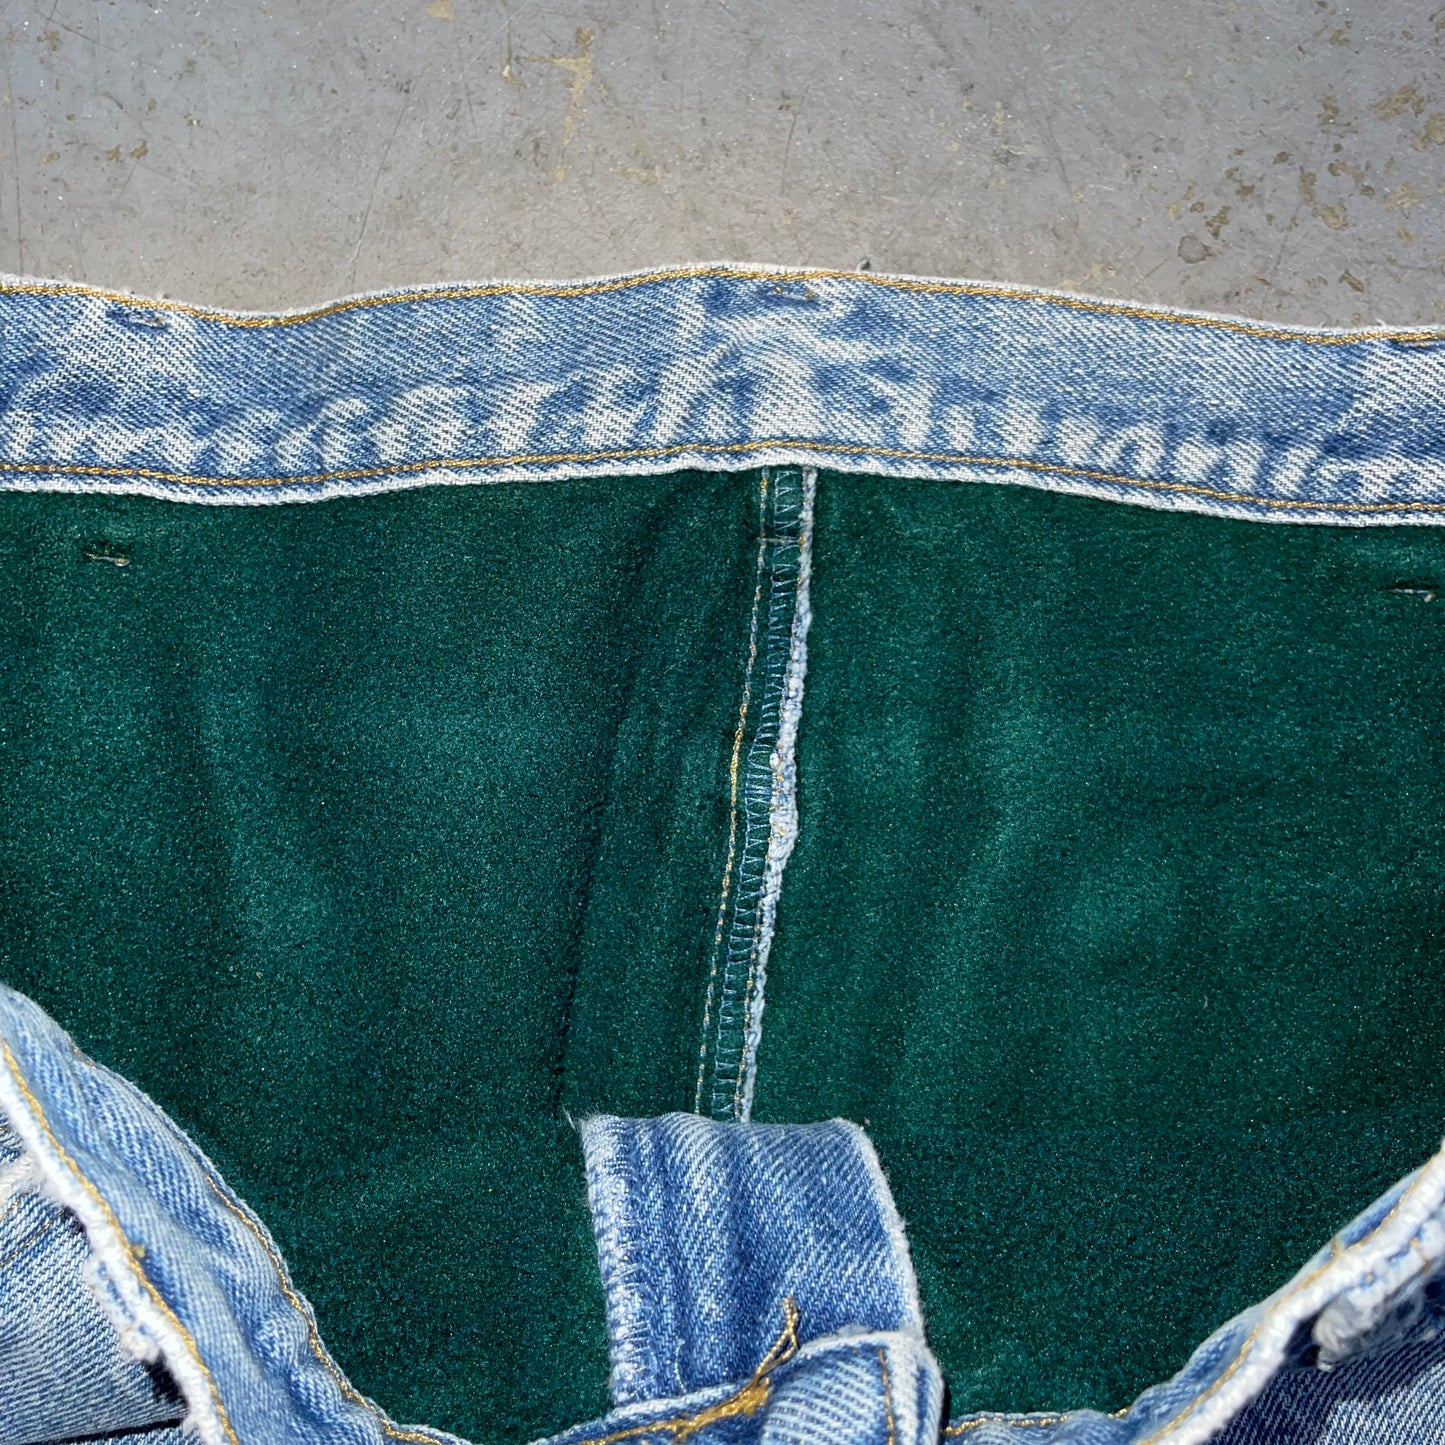 Vintage L.L.Bean Fleece Lined Jeans. Size 36